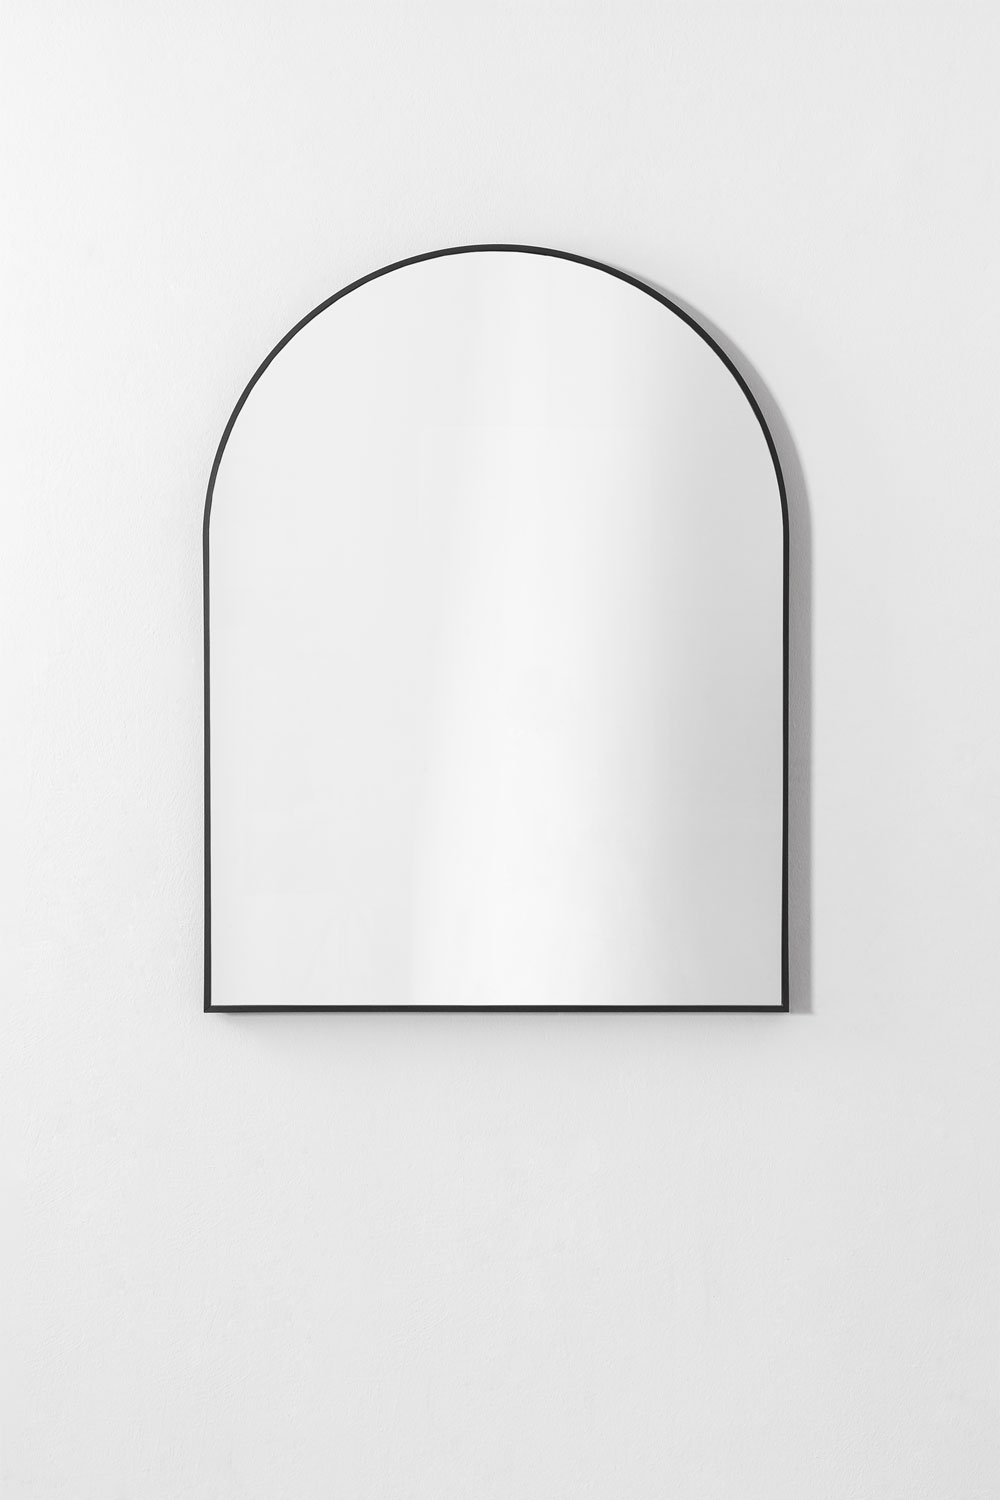 Specchio da parete per bagno in alluminio (65x85 cm) Bolenge, immagine della galleria 1